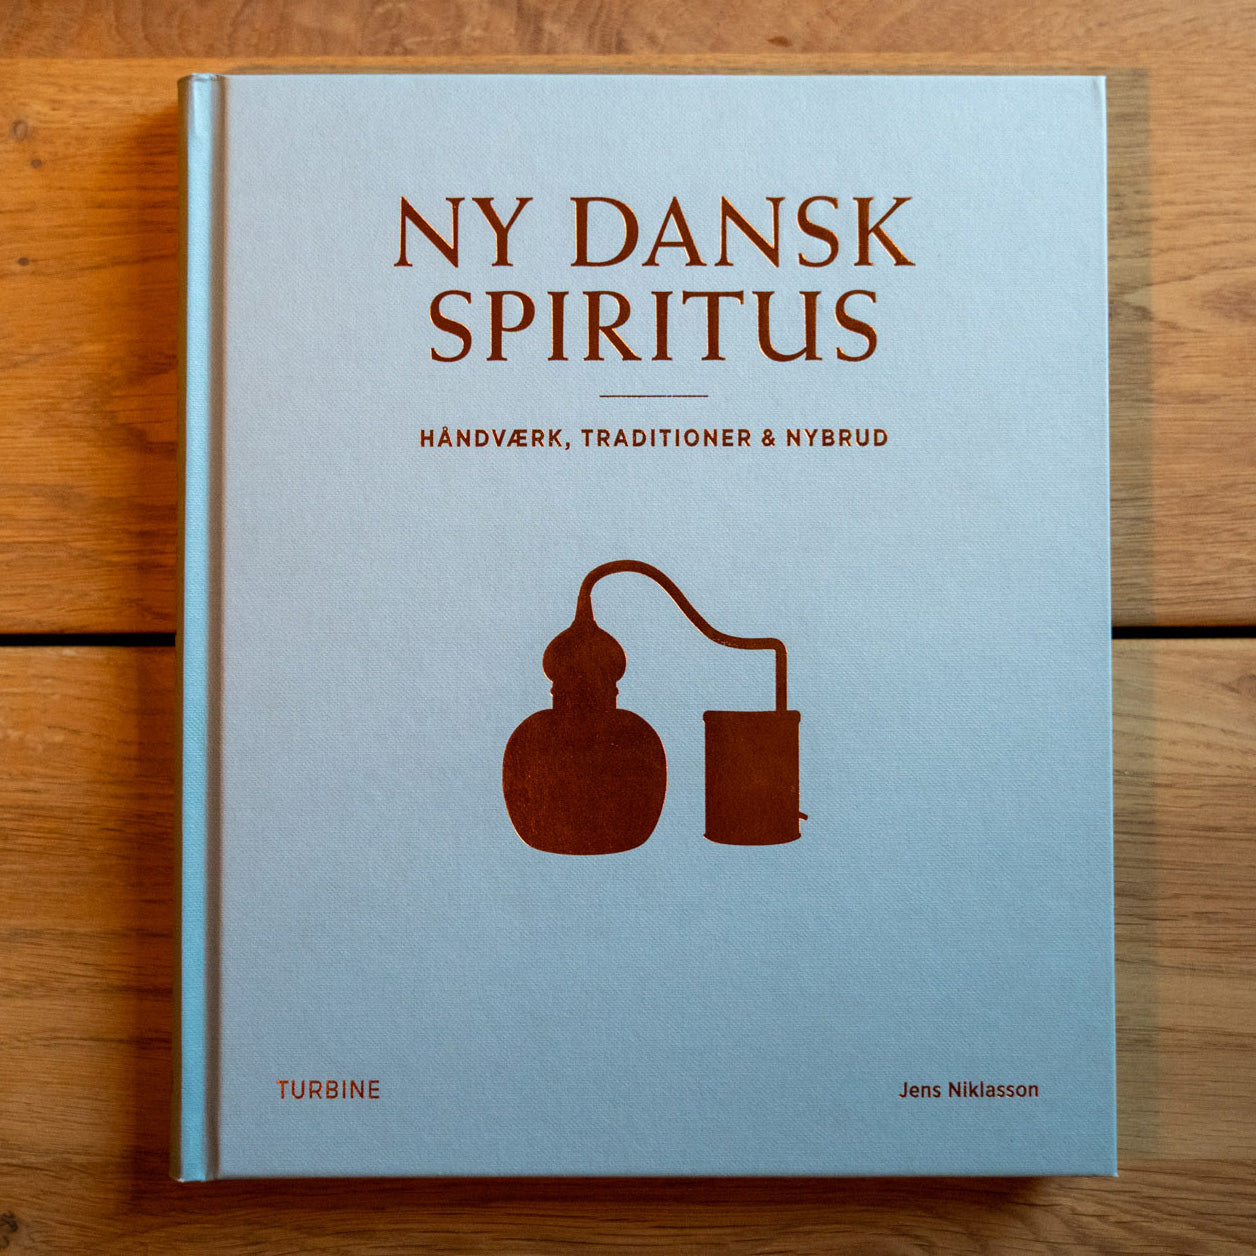 New Danish Spirits (Book)